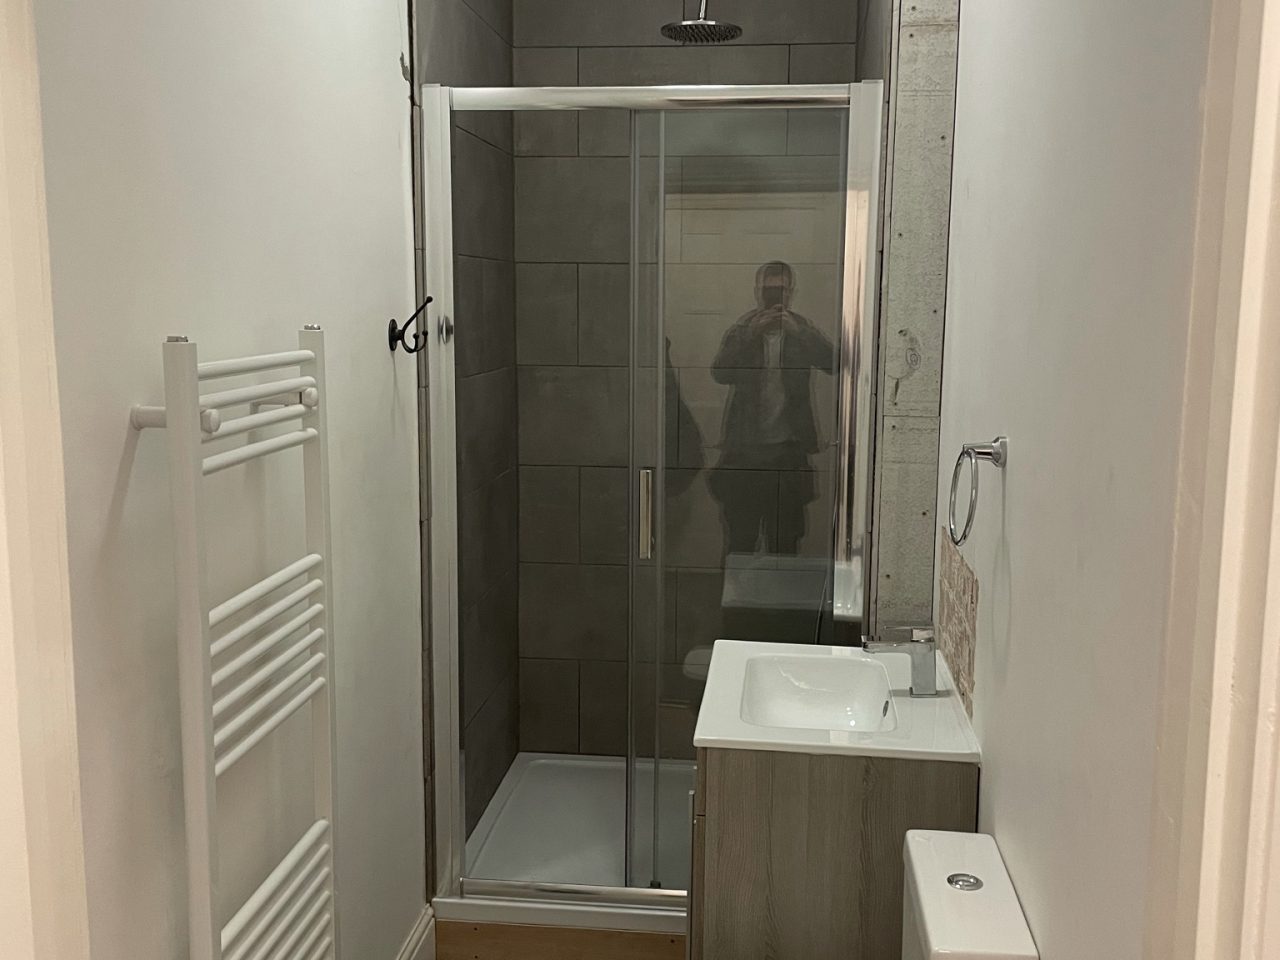 New bathroom refurb in a small flat